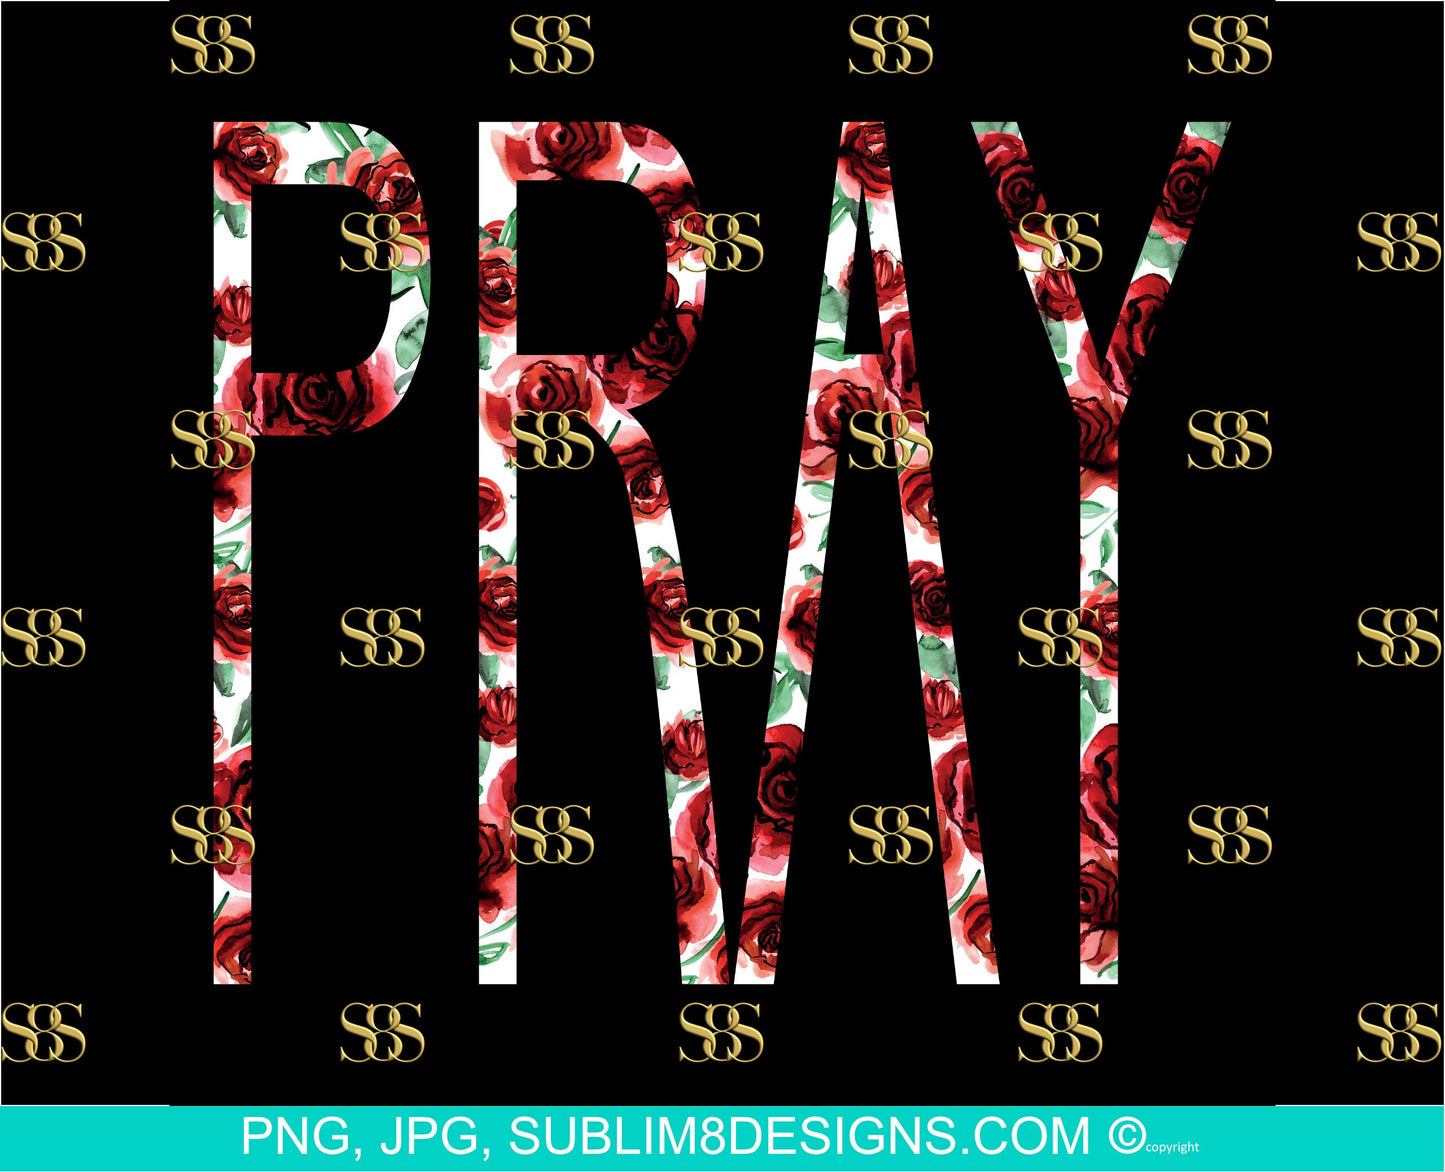 Pray | Background | Floral Design | Rose png | God png | Sublimation Design PNG and JPG ONLY